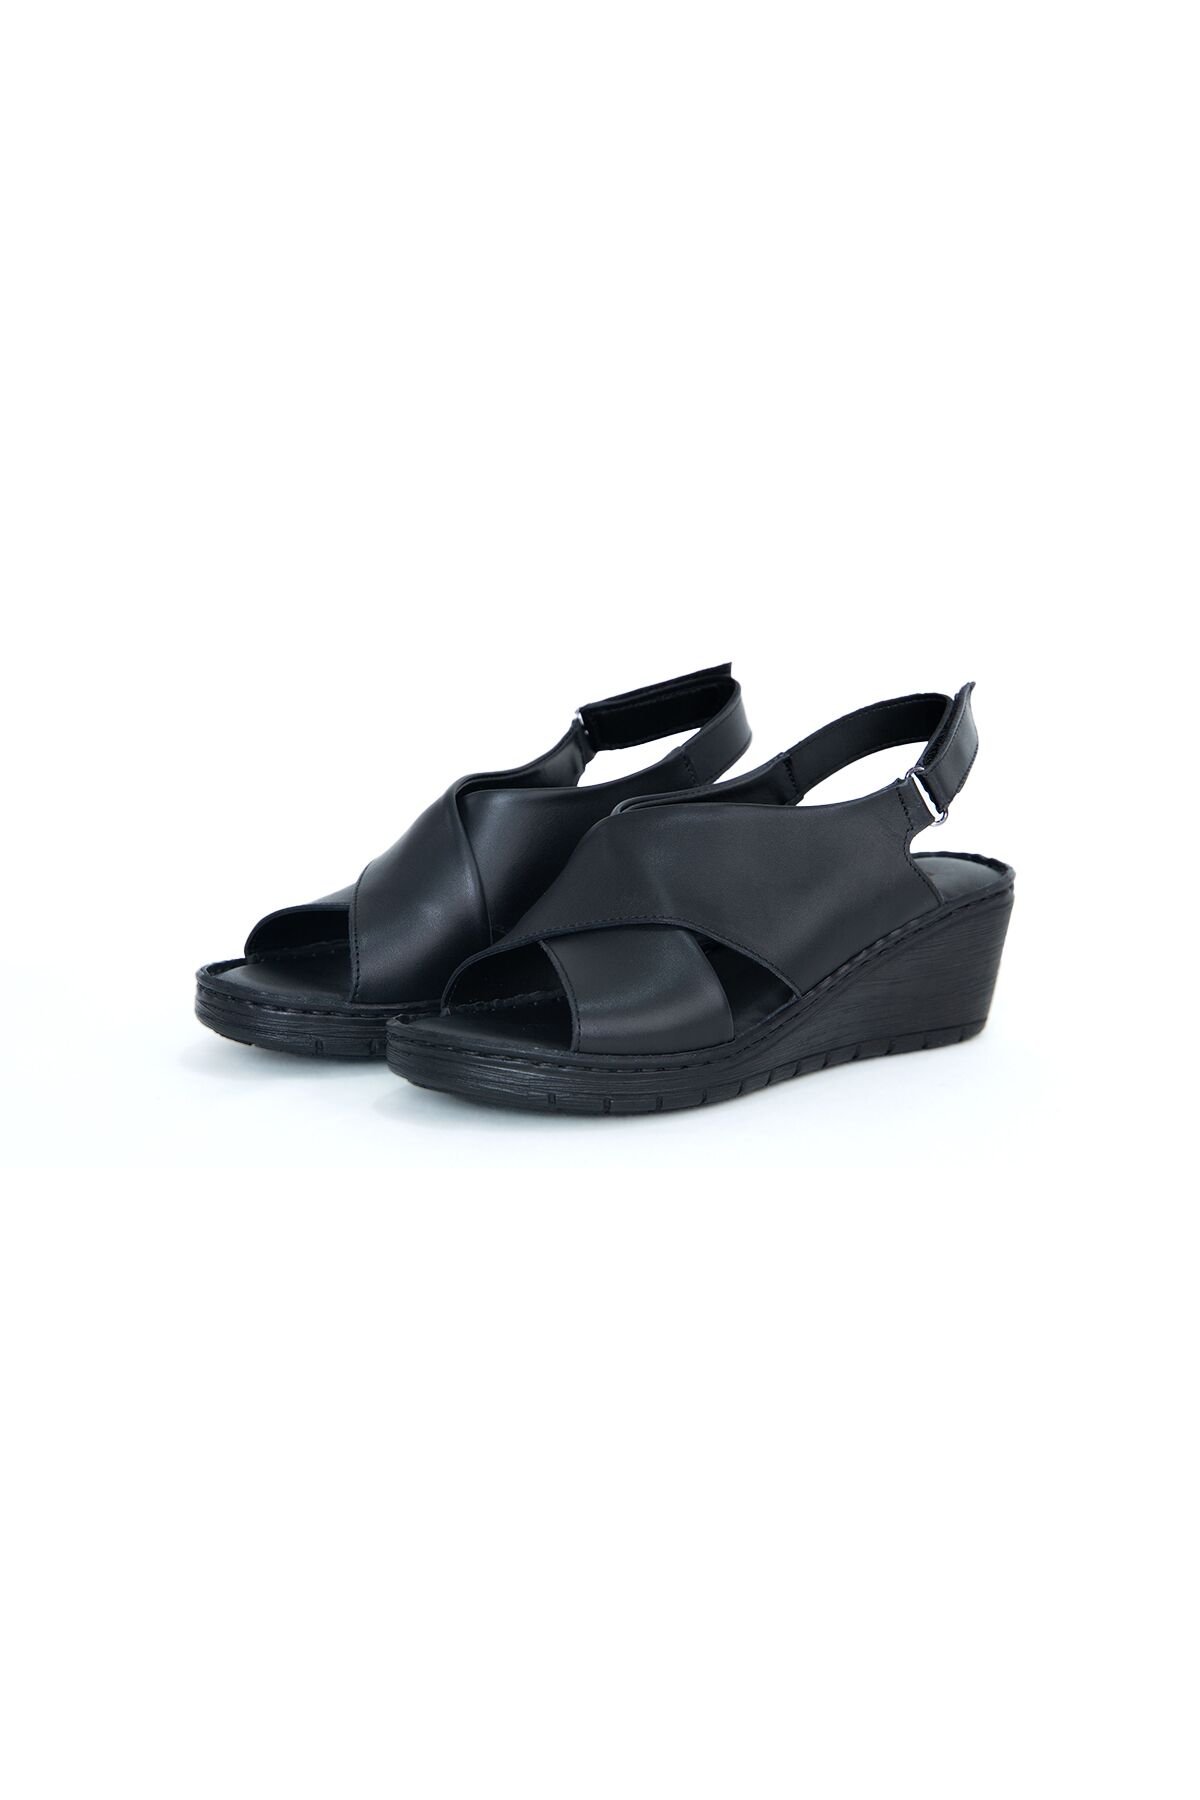 Kadın Ortopedik Sandalet PC-6907-Siyah - 1